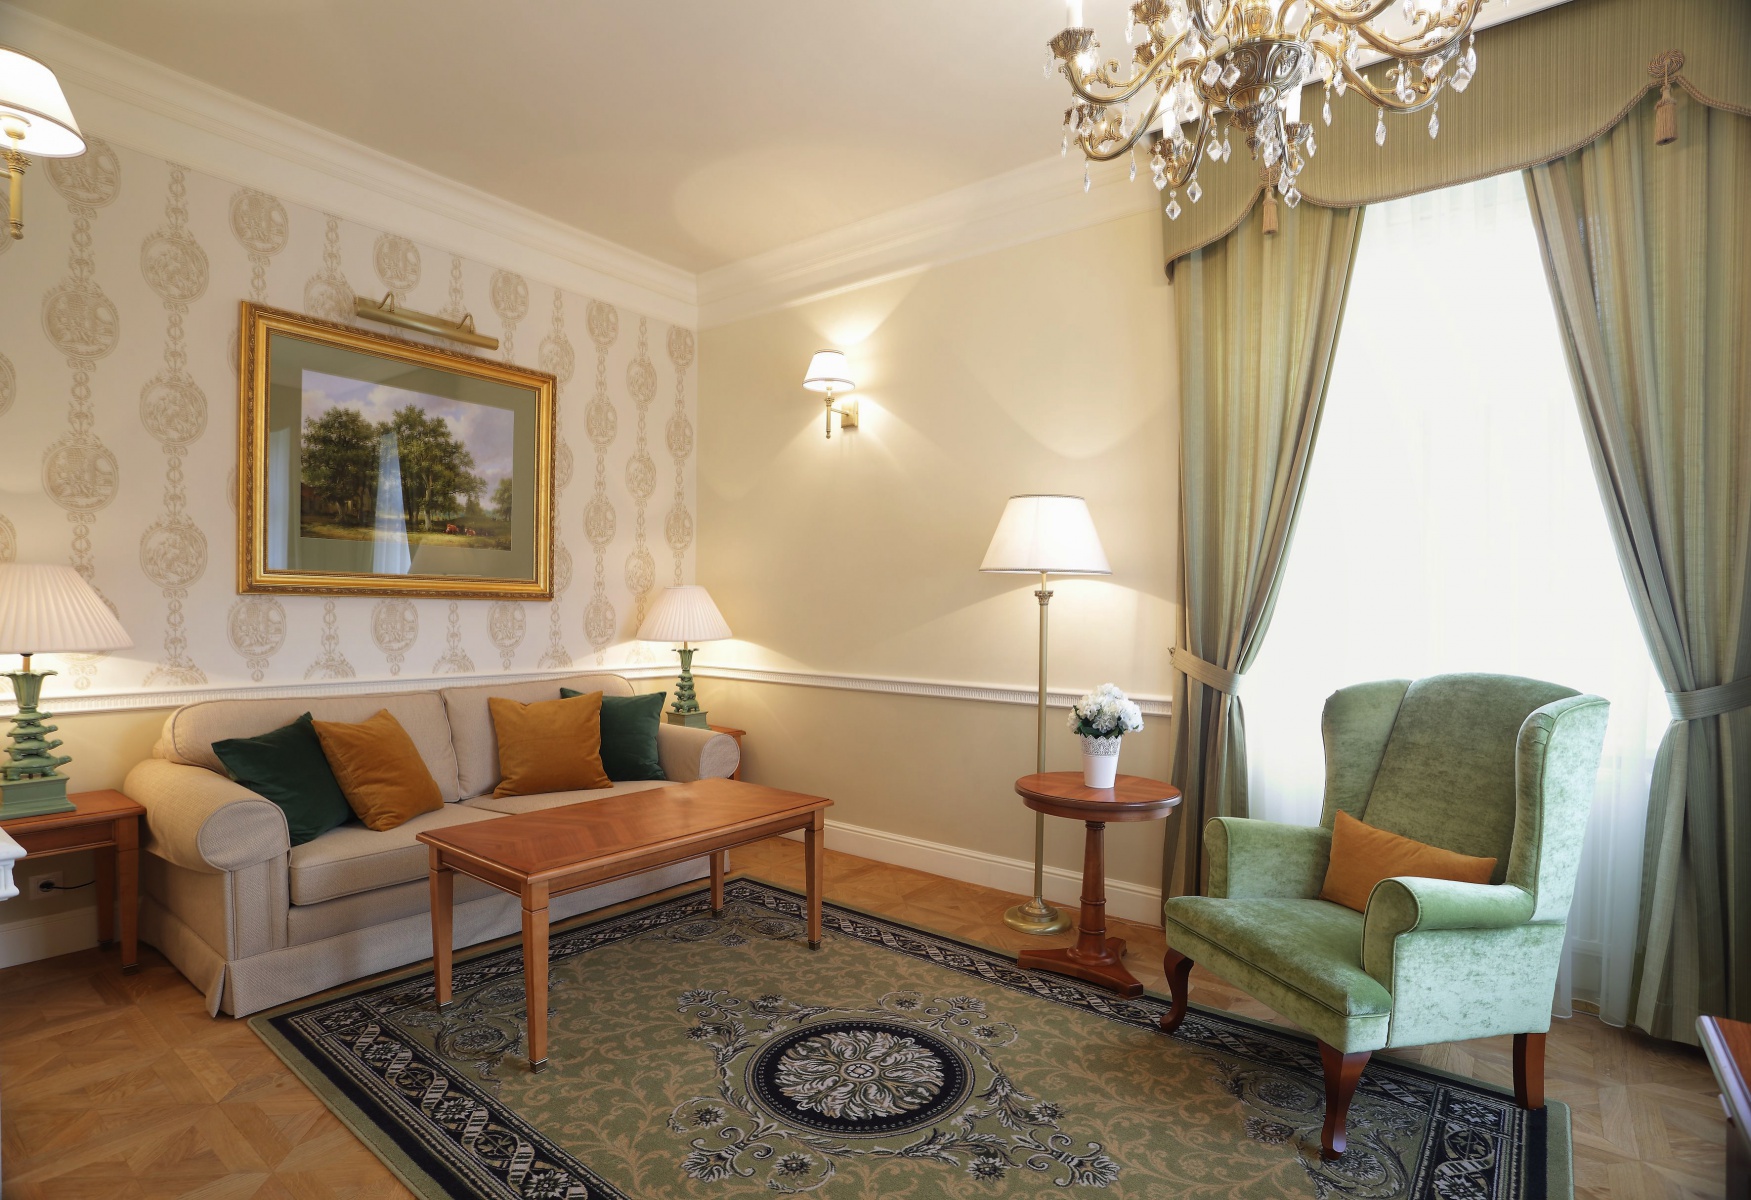 Zelené Apartmá. Hotel Richmond, Karlovy Vary - Interior Design Studio GATTABIANCA